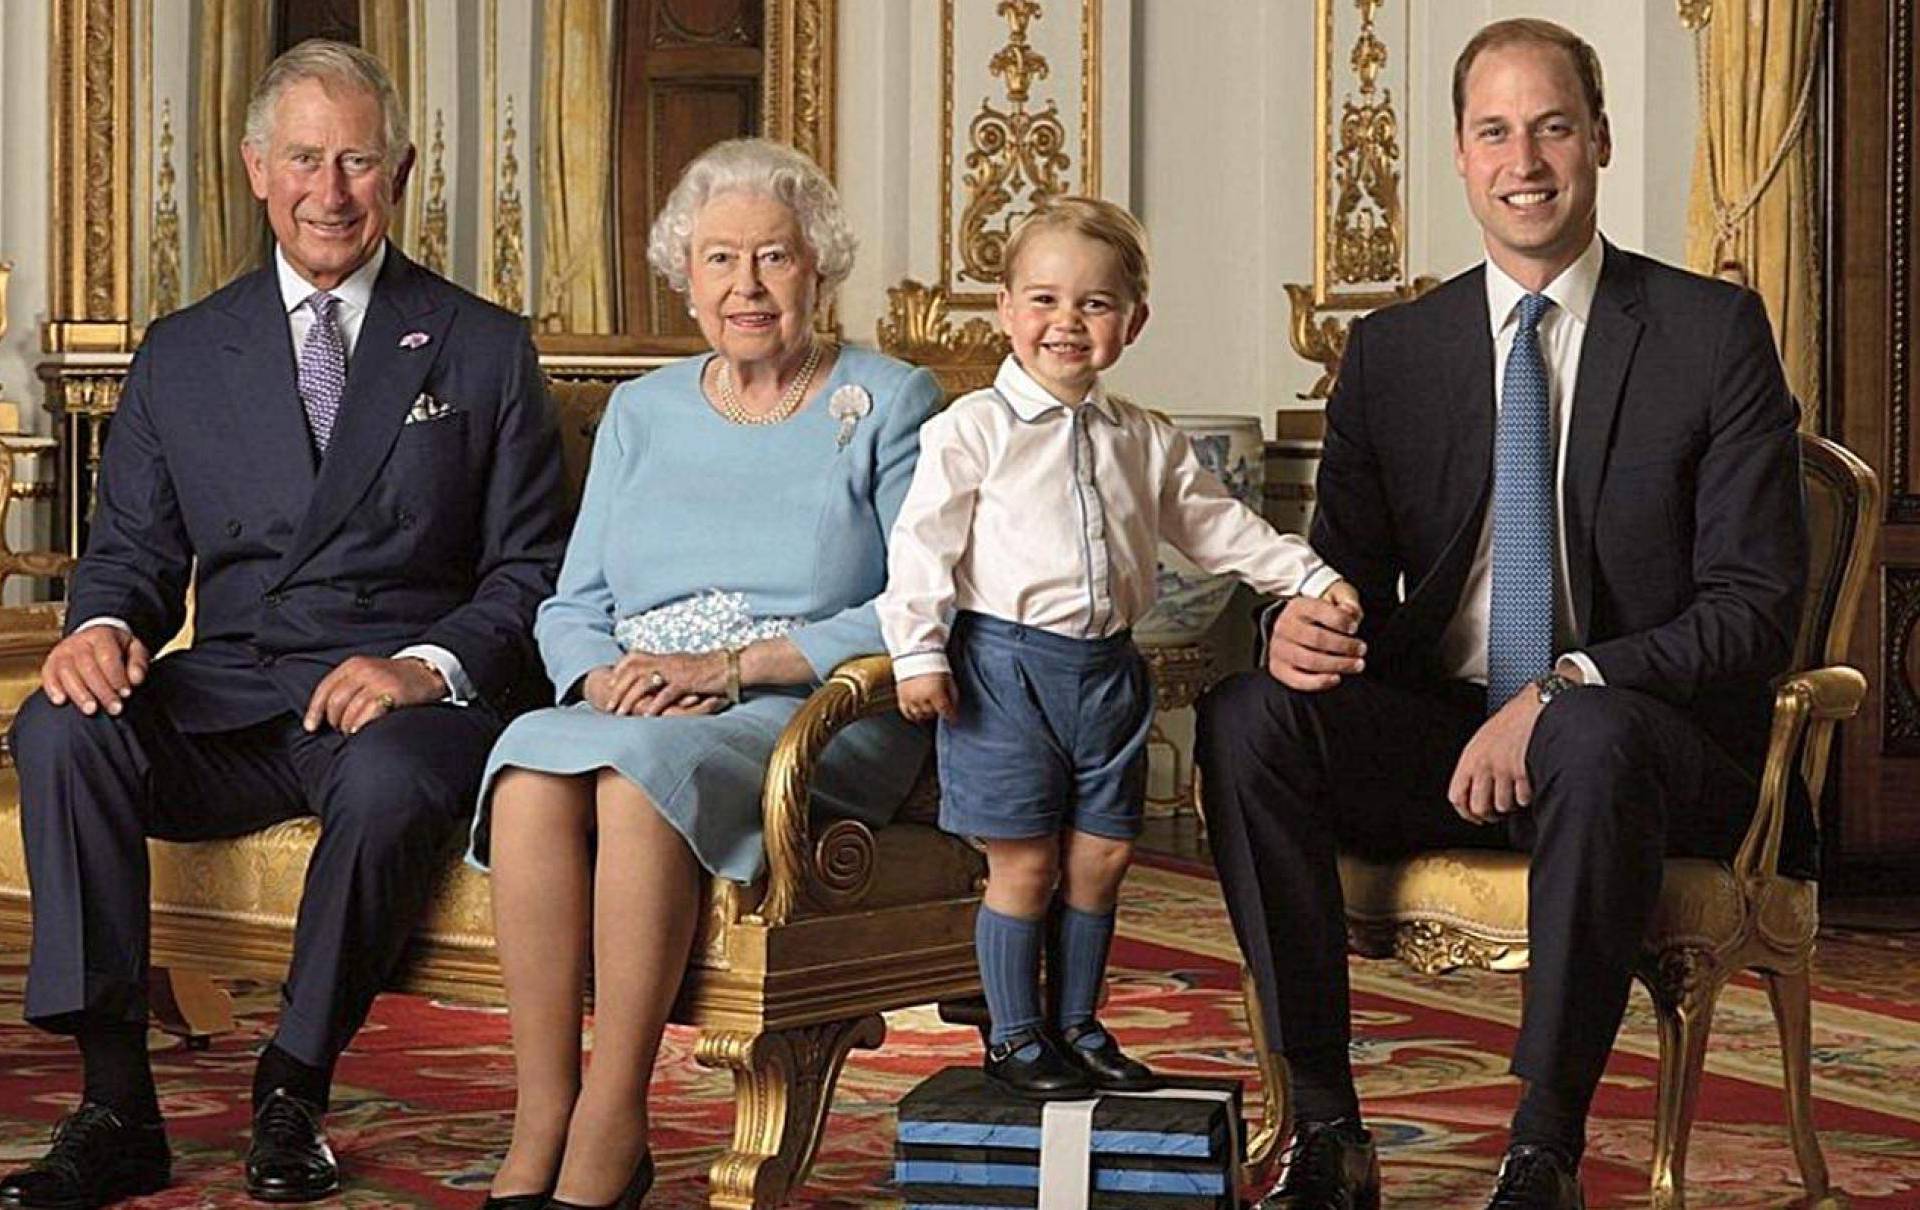 Britanska kraljevska obitelj traži stručnjaka za društvene mreže